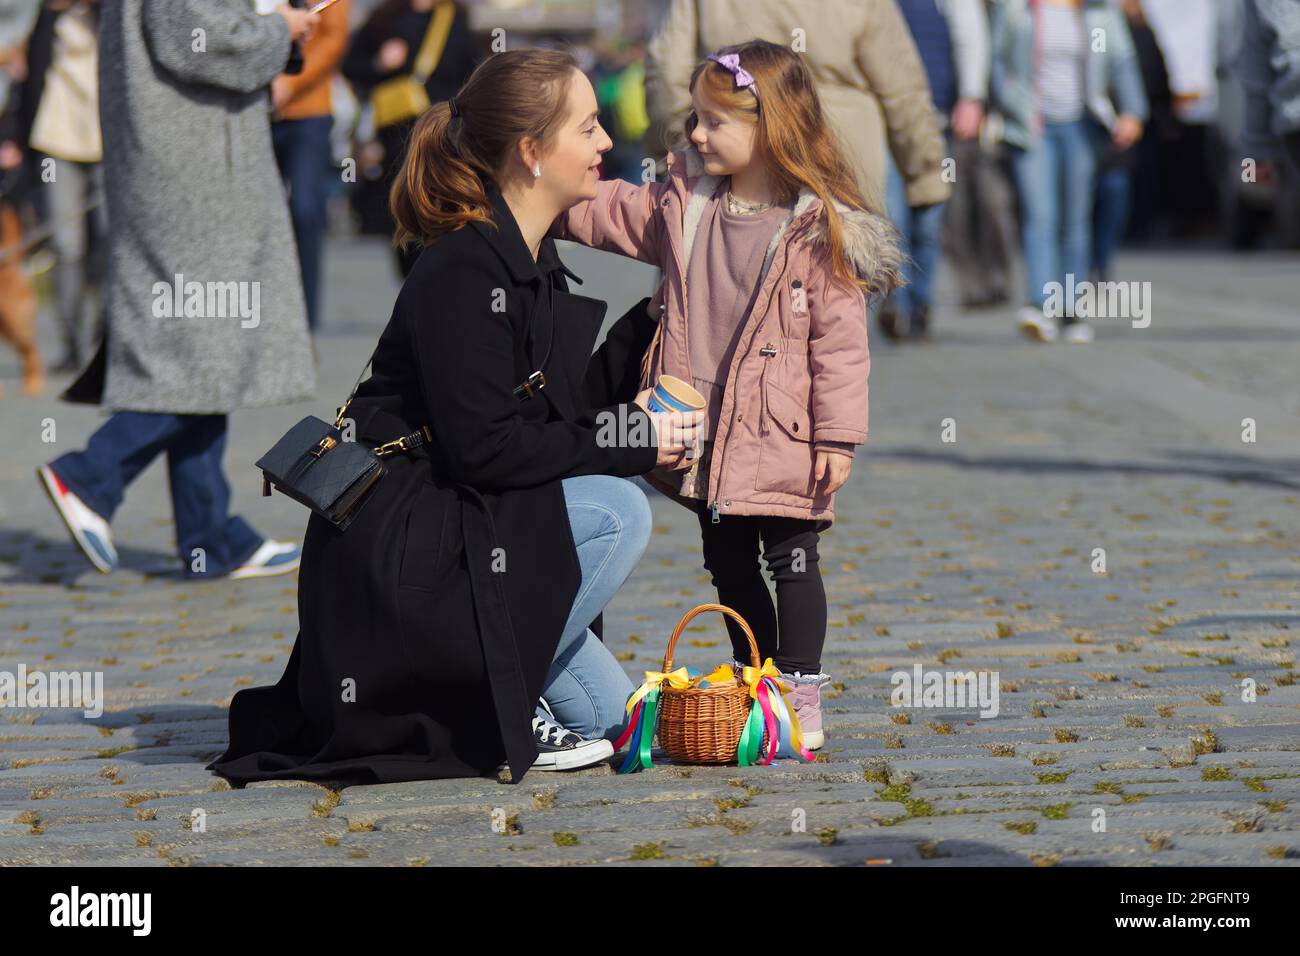 Jeune mère avec sa petite fille au marché de Pâques à Prague, un panier acheté avec des décorations de Pâques sur le grund. Jour de printemps ensoleillé, pas d'ai Banque D'Images